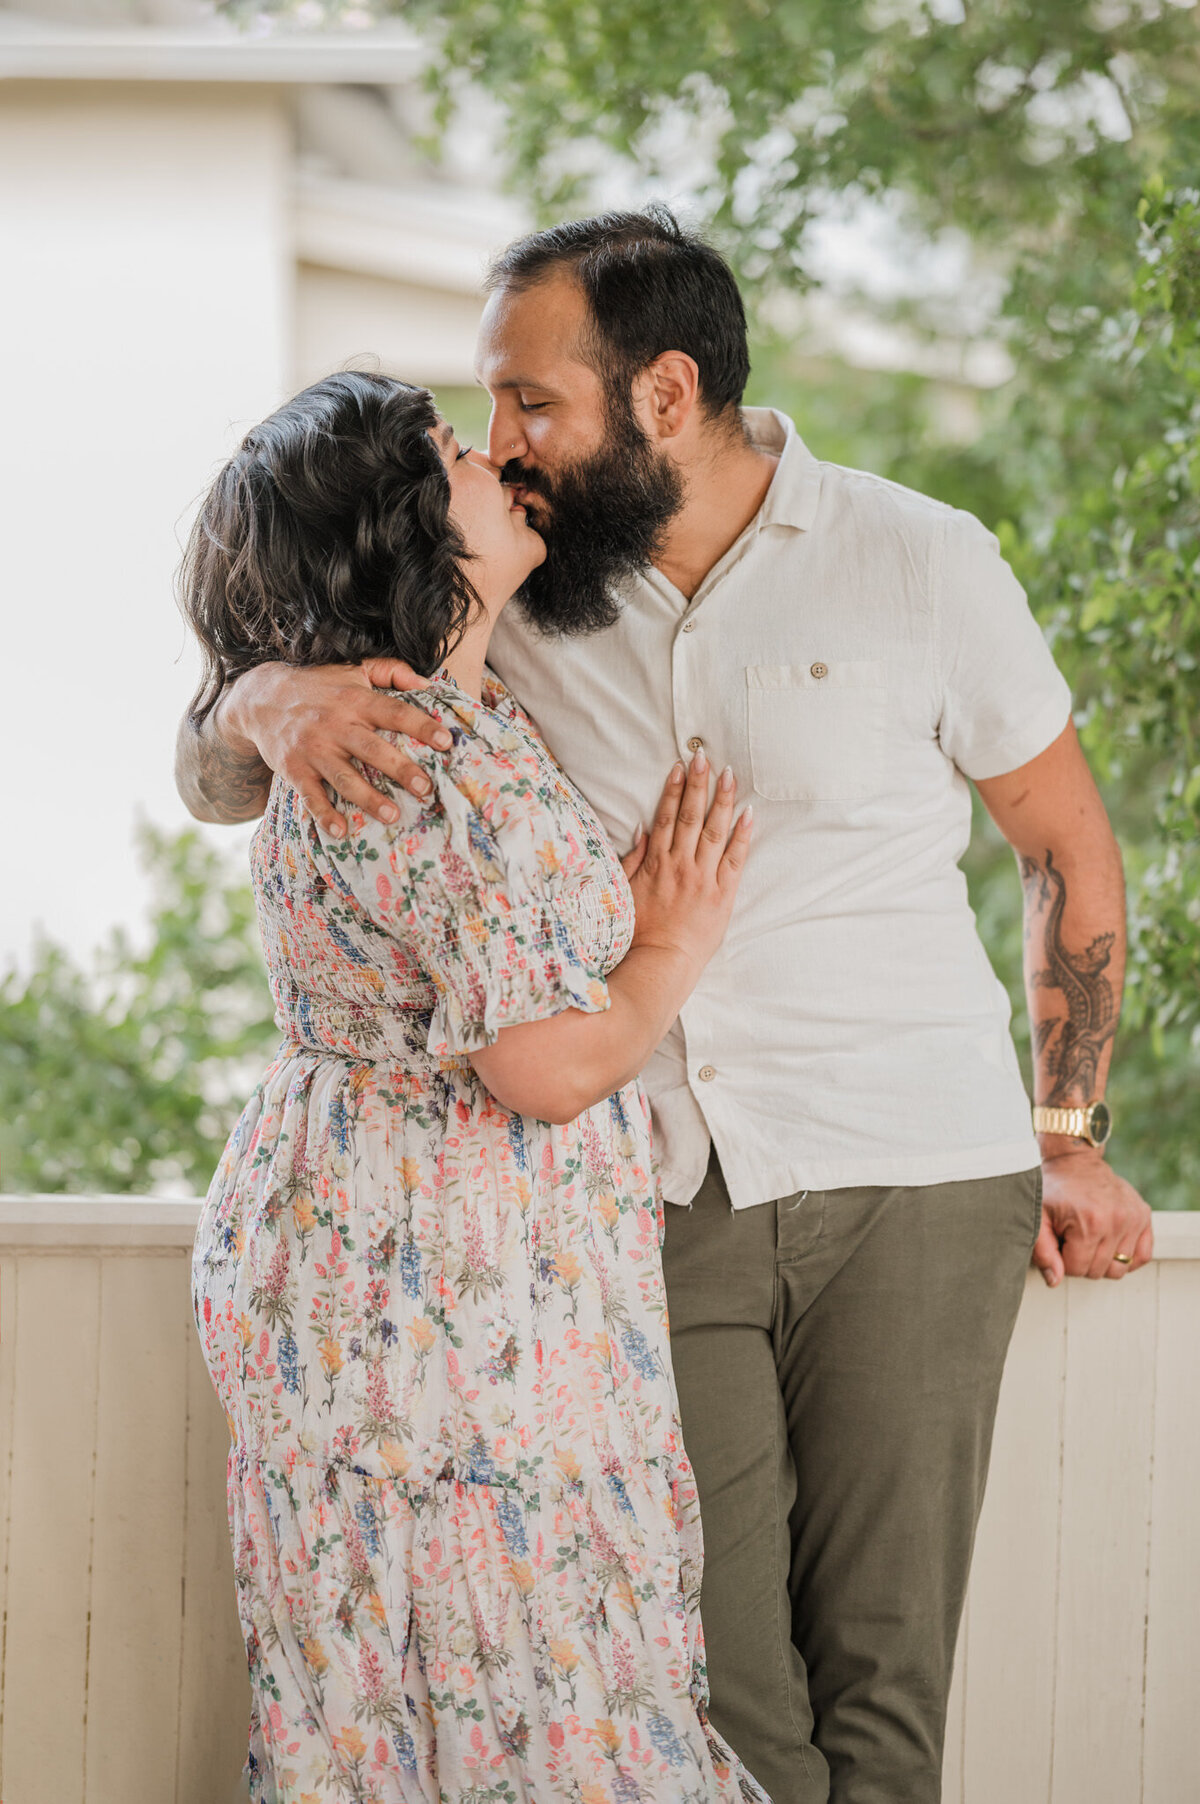 A man and woman lean against a porch rail and kiss.